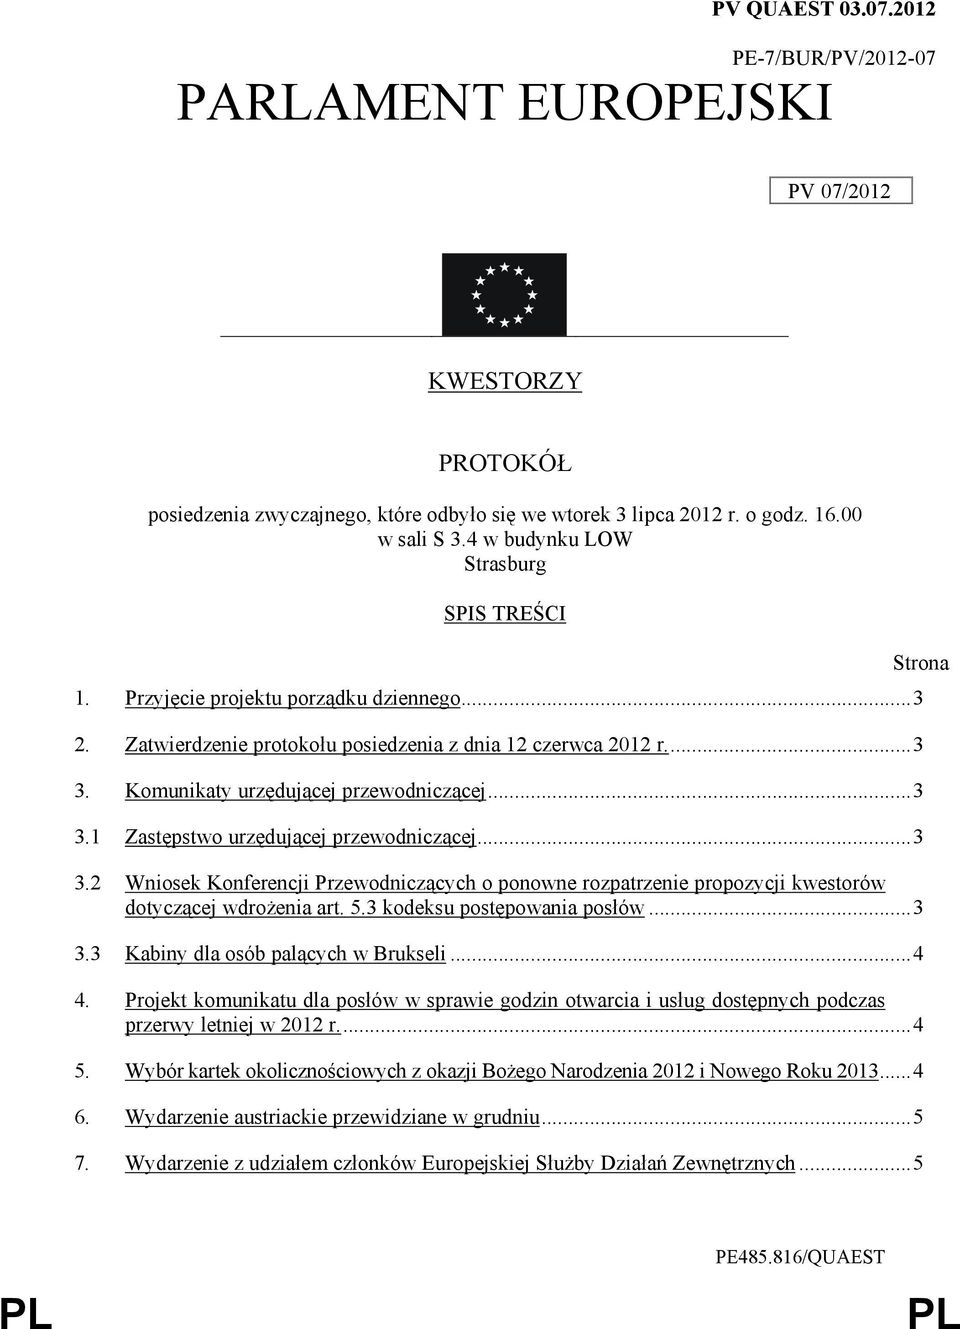 ..3 3.2 Wniosek Konferencji Przewodniczących o ponowne rozpatrzenie propozycji kwestorów dotyczącej wdroŝenia art. 5.3 kodeksu postępowania posłów...3 3.3 Kabiny dla osób palących w Brukseli...4 4.